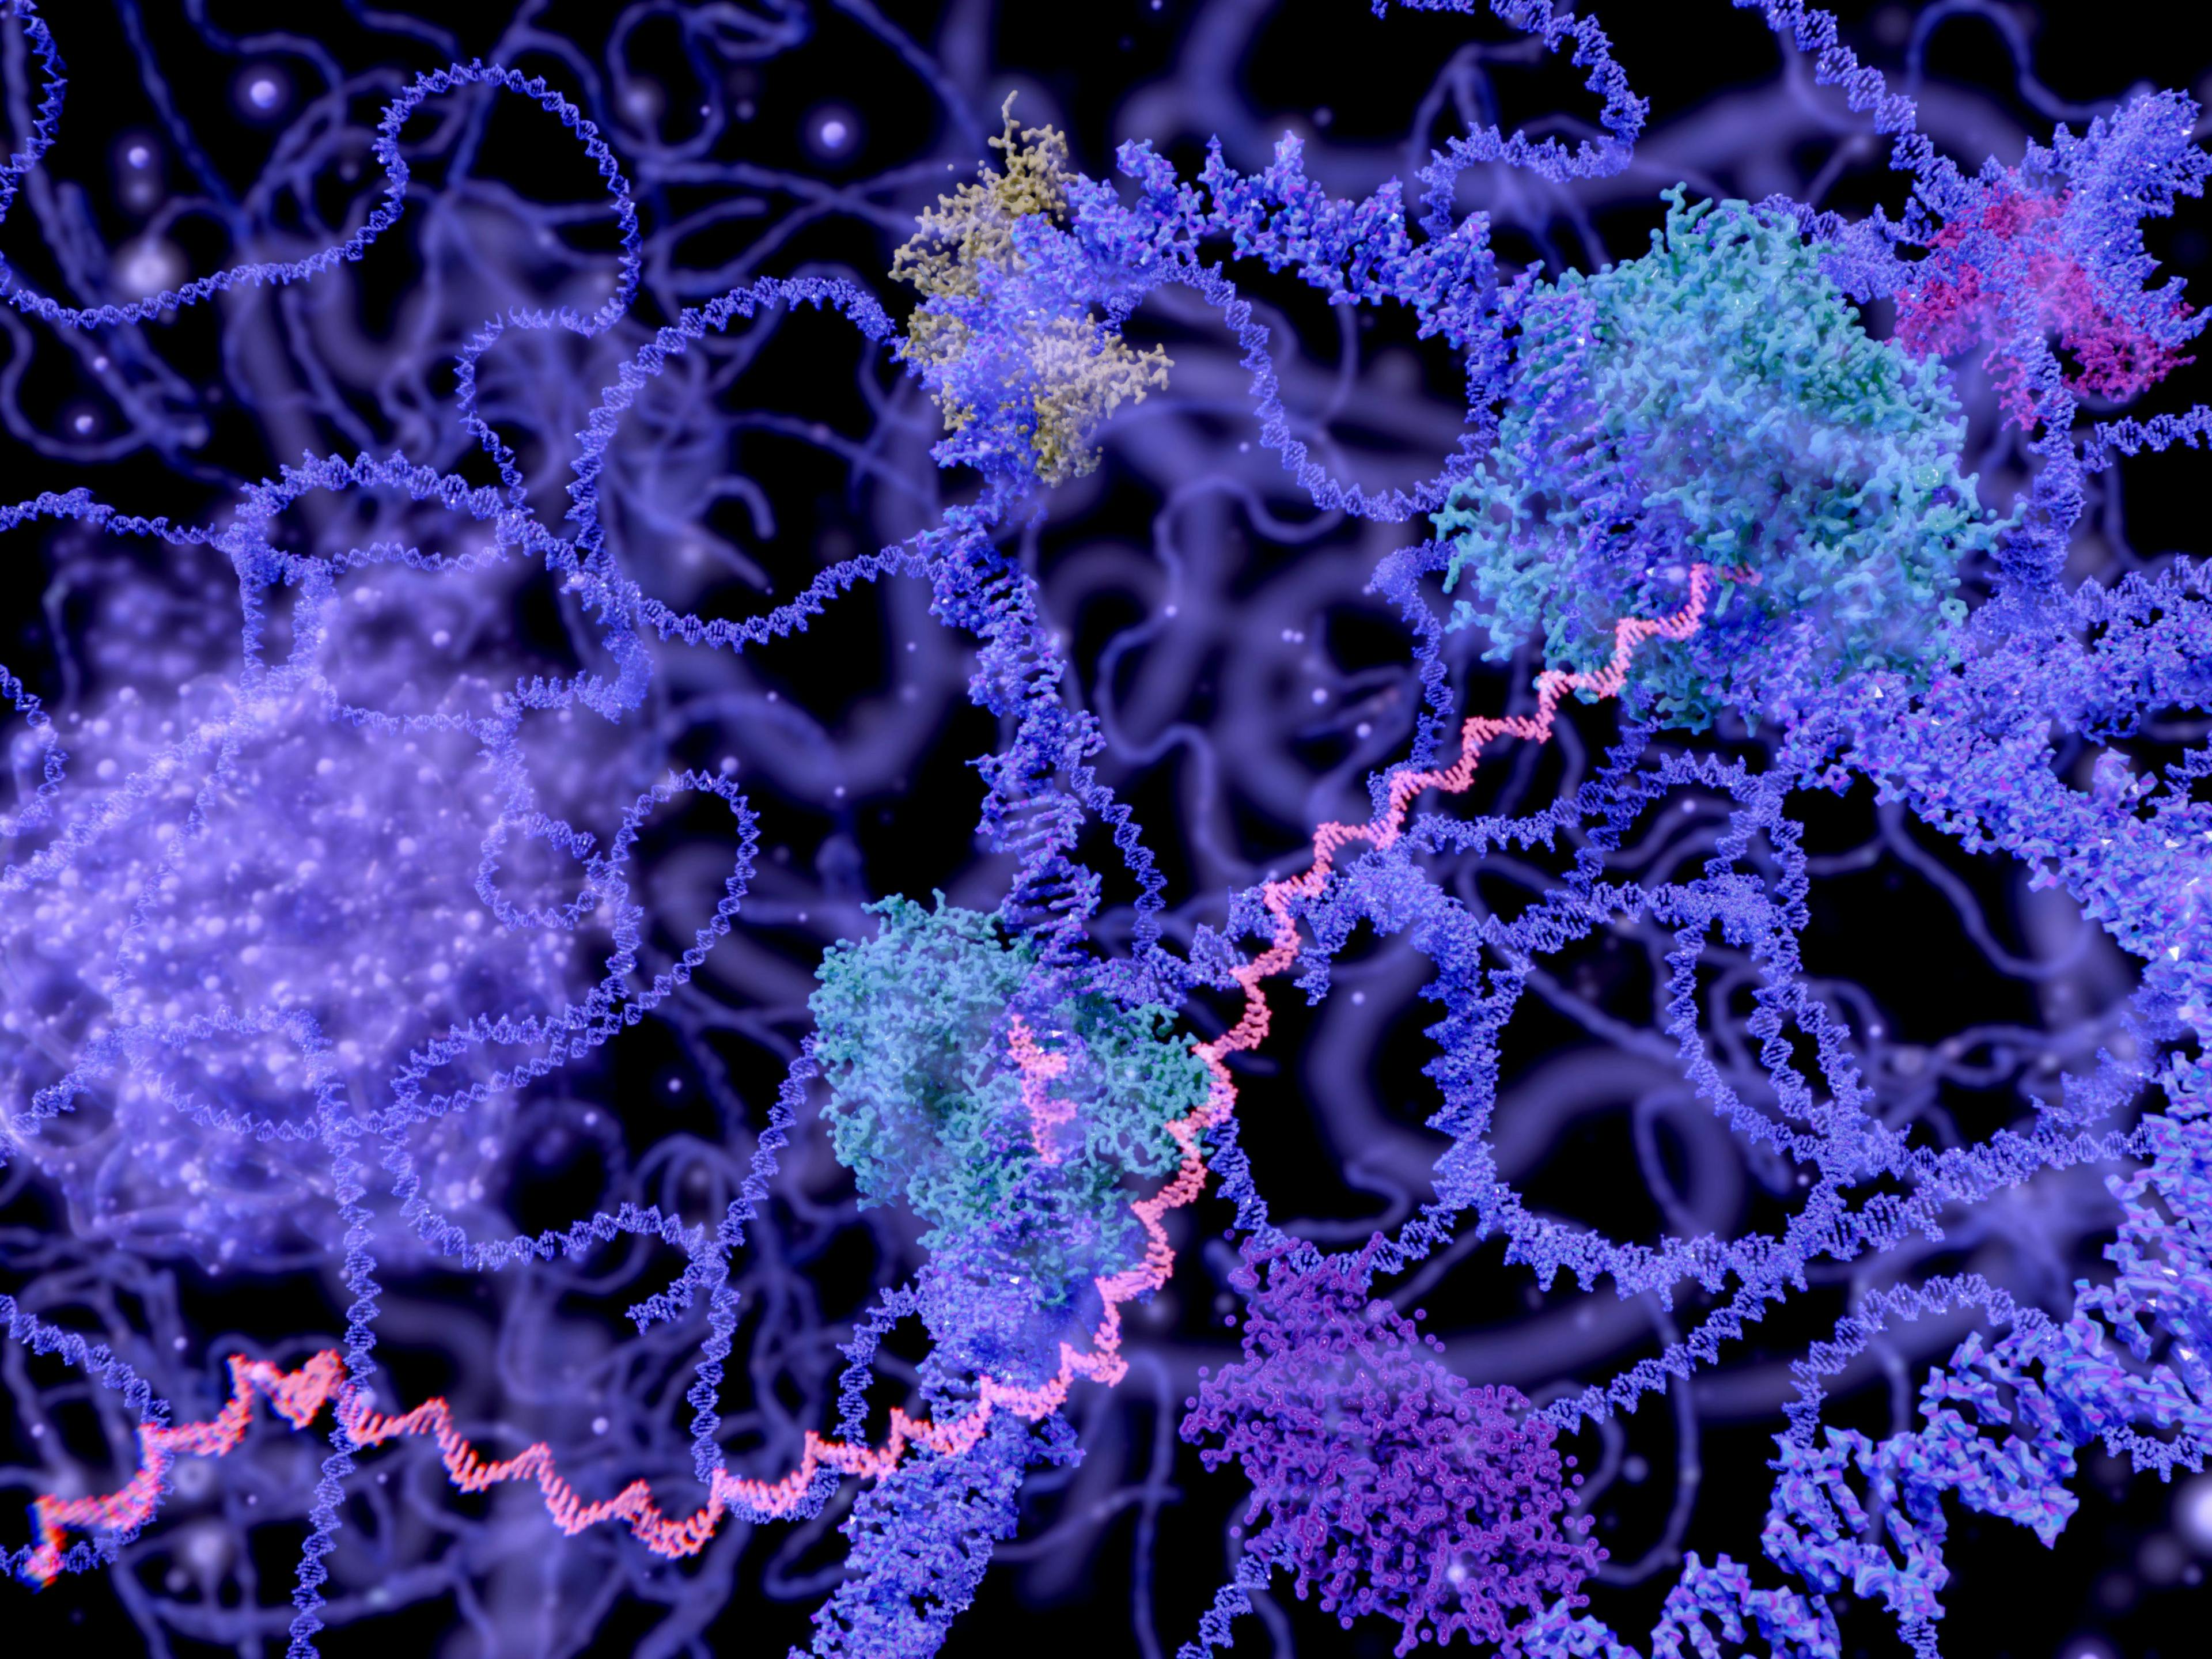 Moleküle im Zellkern. Image Credit: Adobe Stock Images/Juan Gärtner